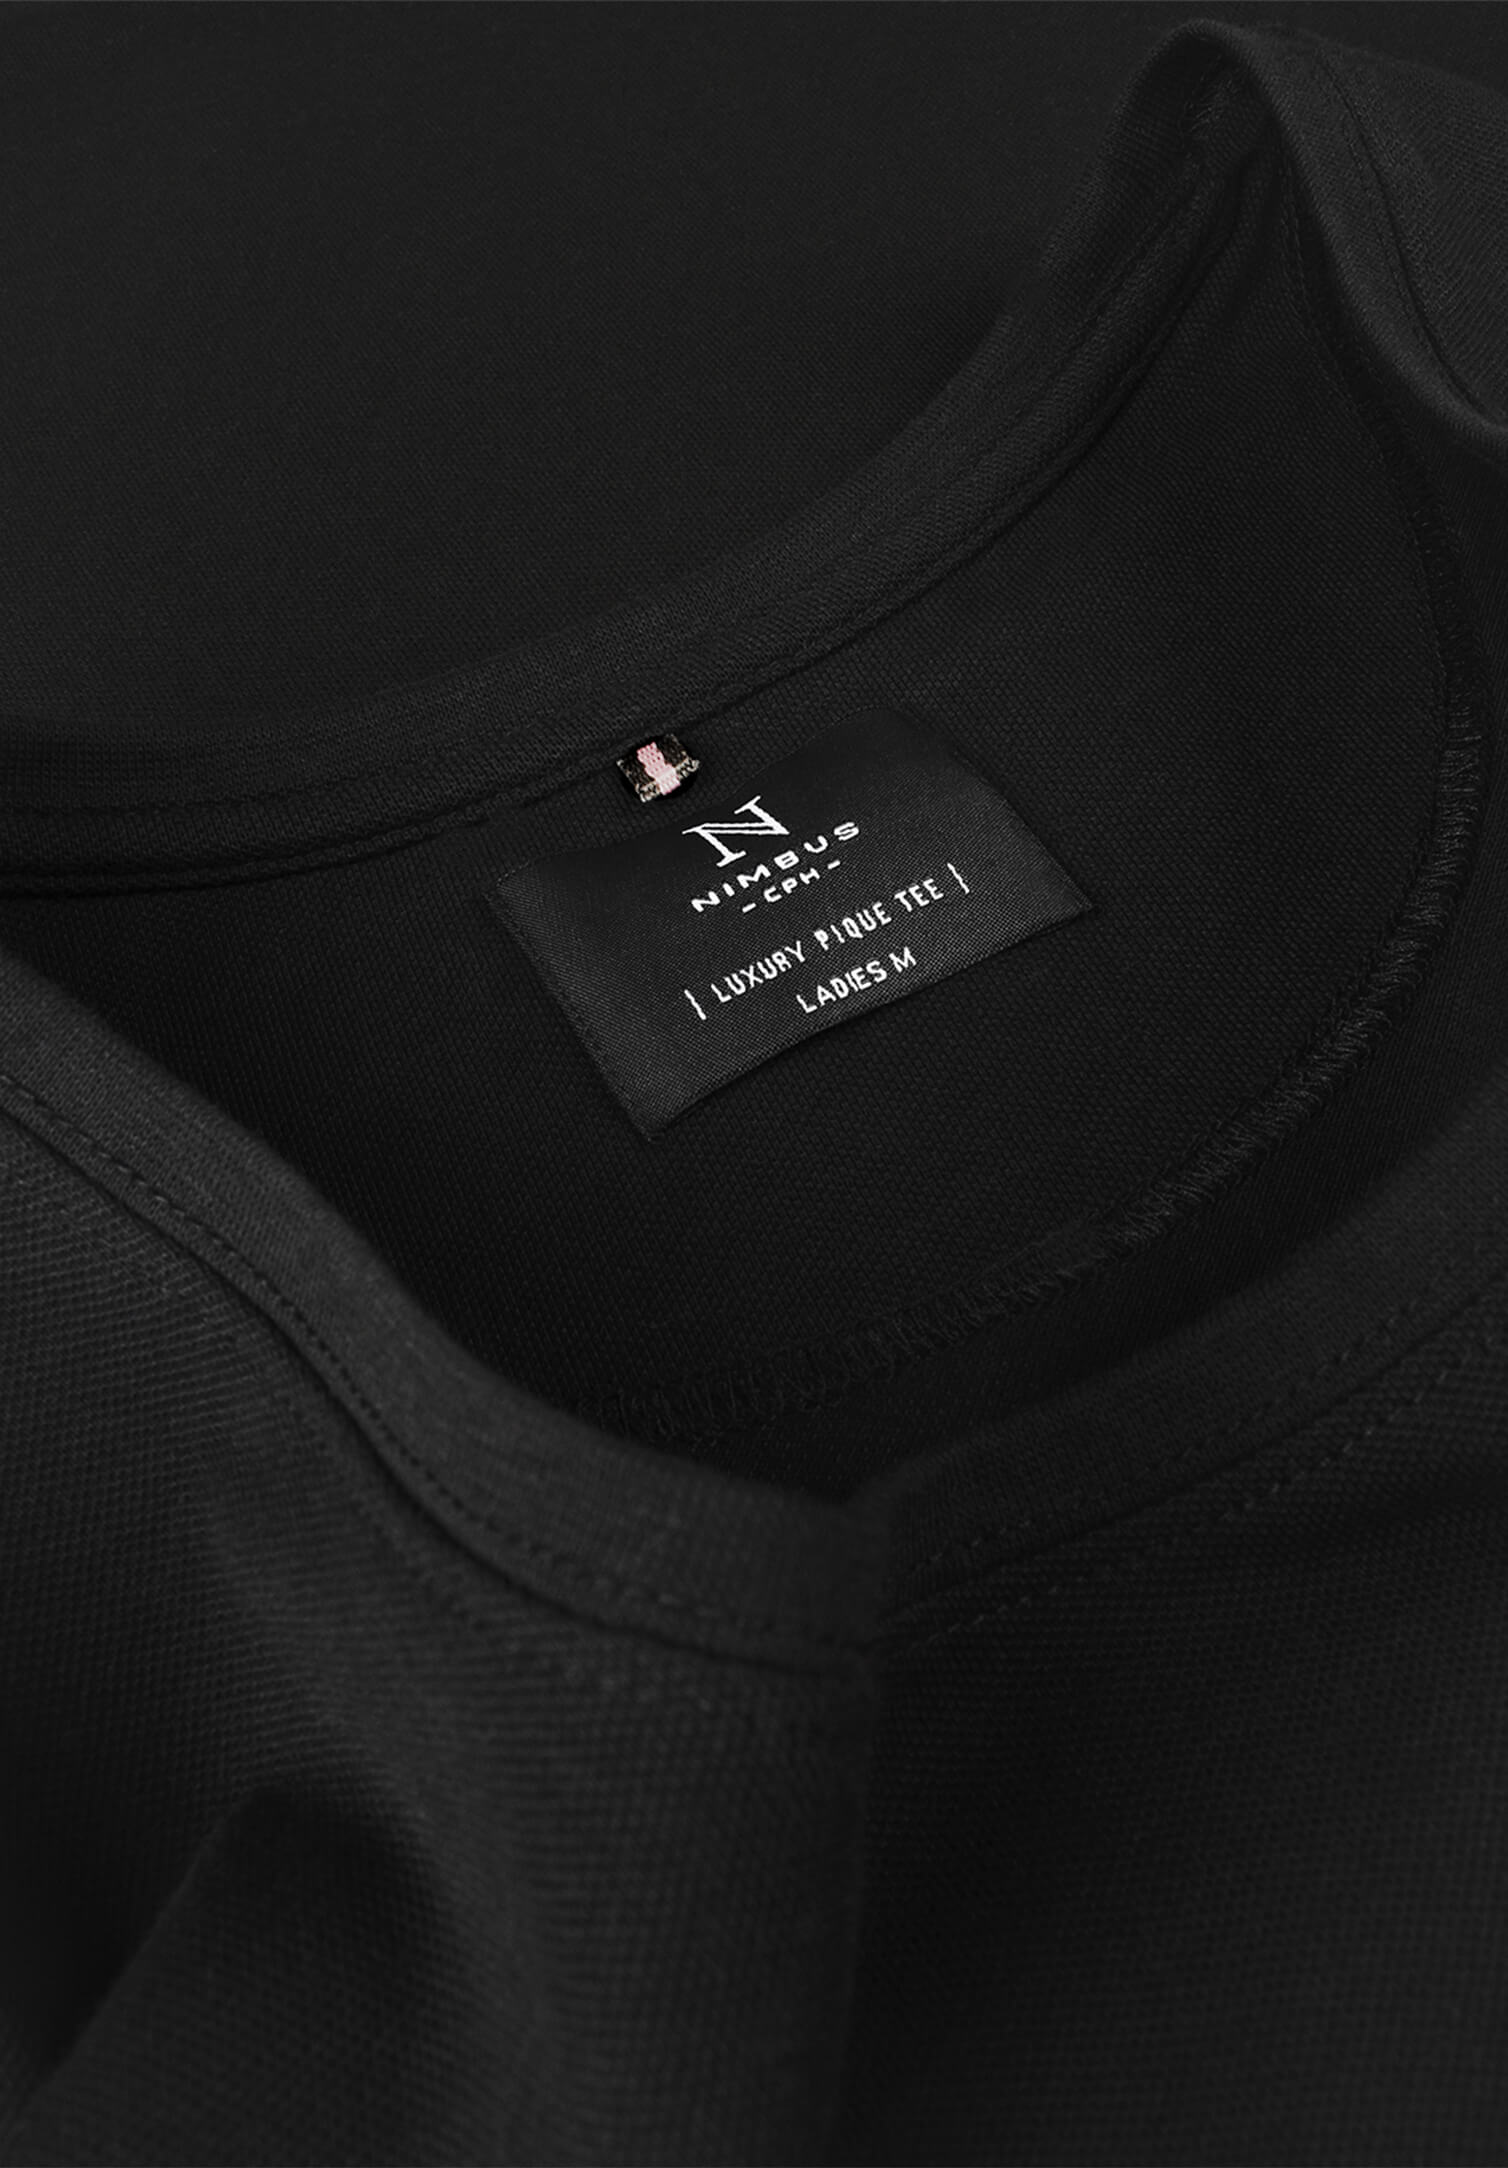 Damen Piquet Shirt - schwarz - XS